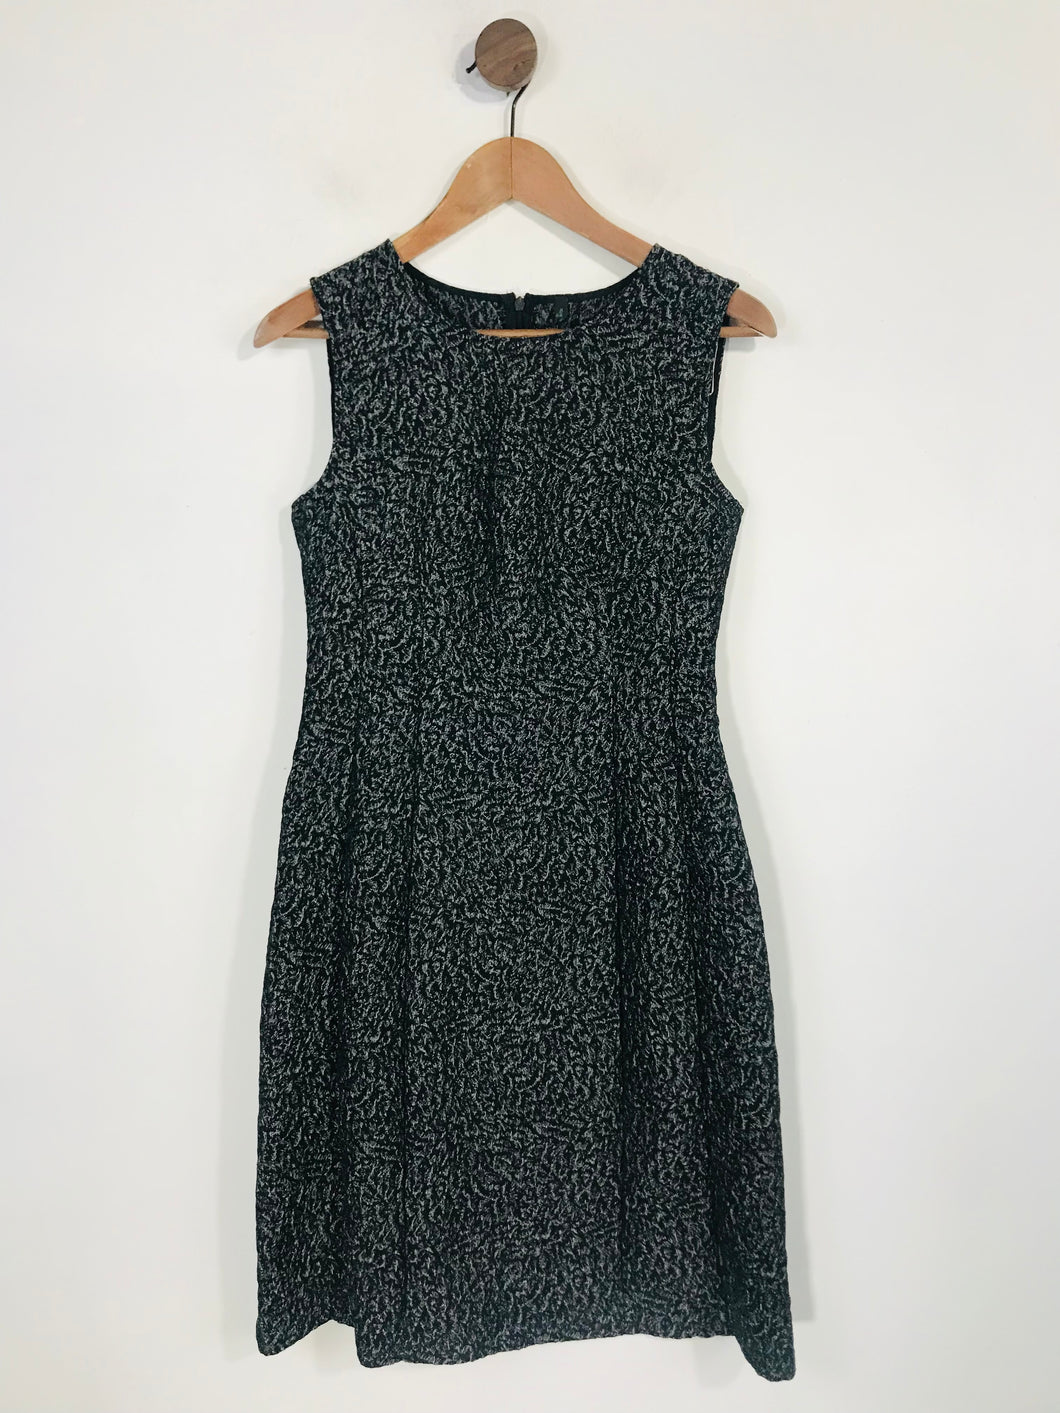 Stile Benetton Women's Sleeveless A-Line Dress | S UK8 | Black